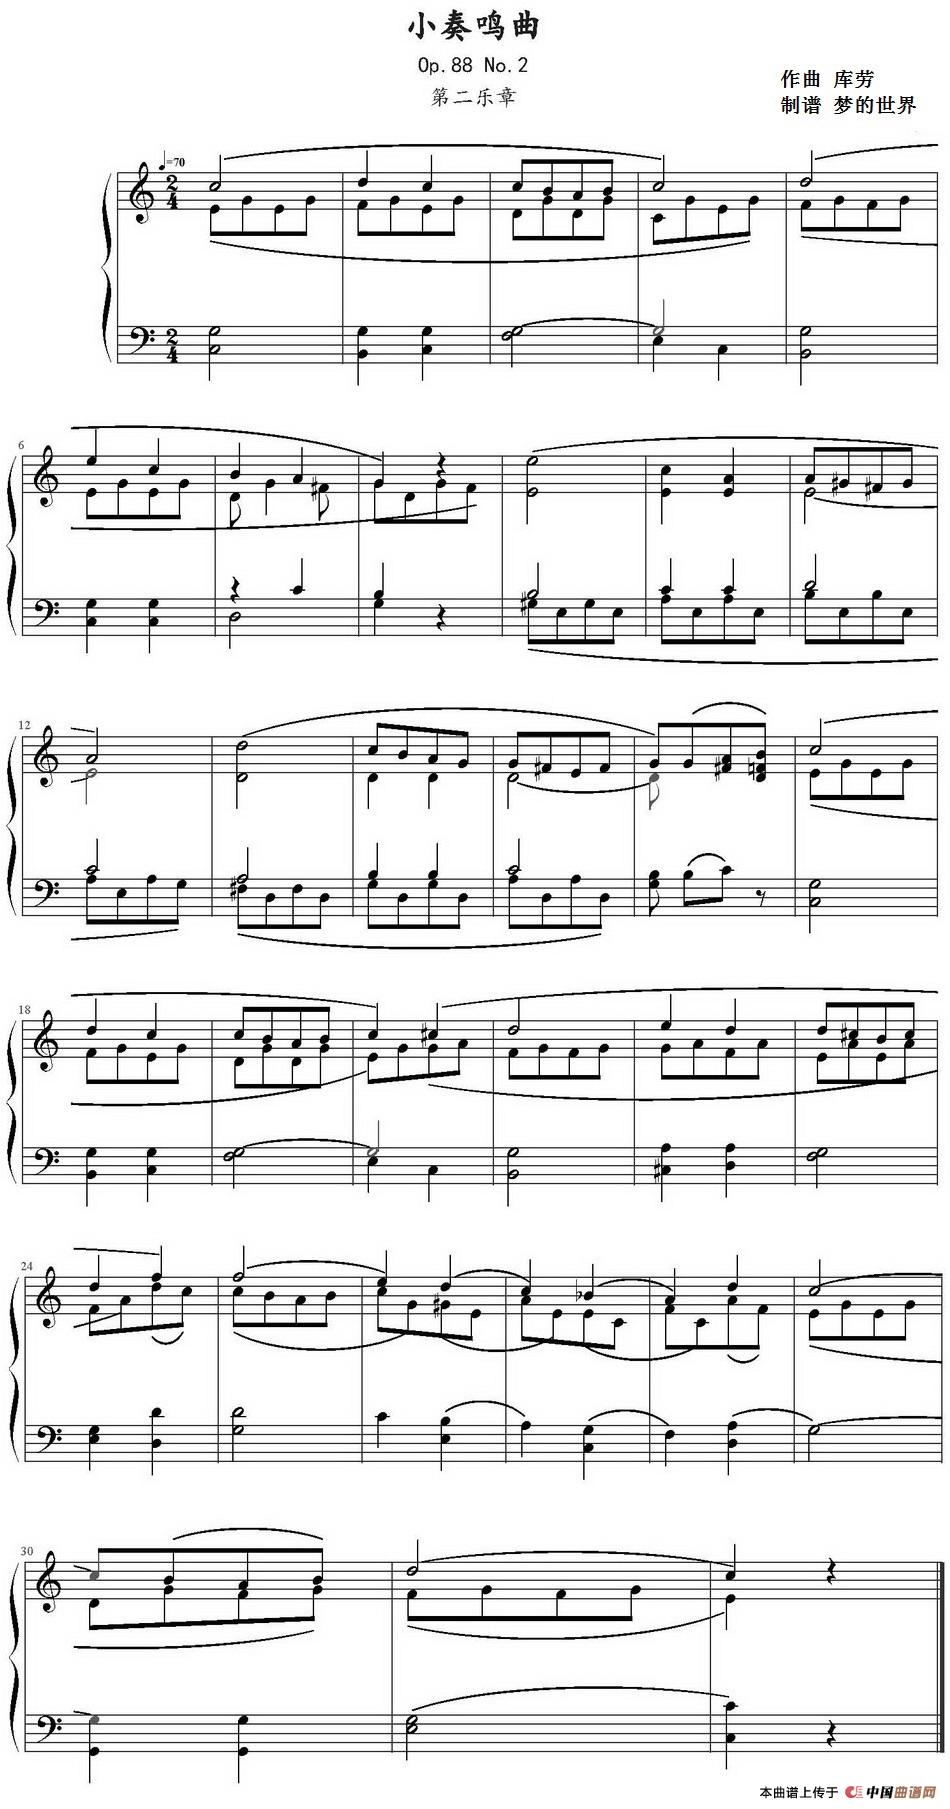 歌谱:小奏鸣曲(库劳op.88 no.2)(钢琴谱)图片